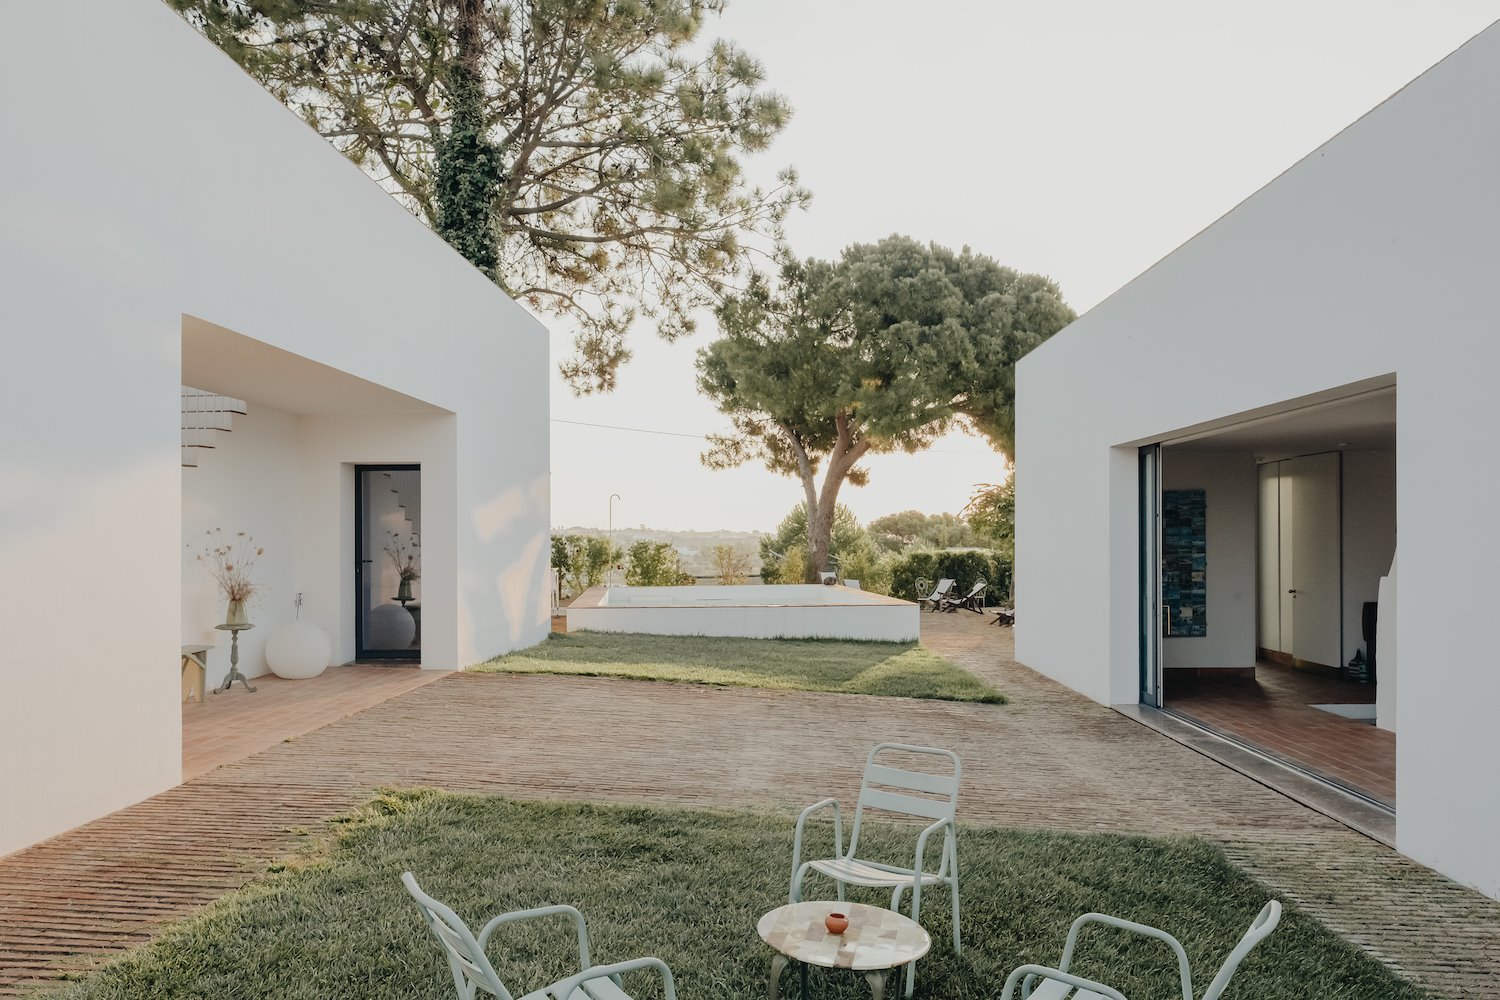 casa Modesta Algarve Portugal jardin terraza